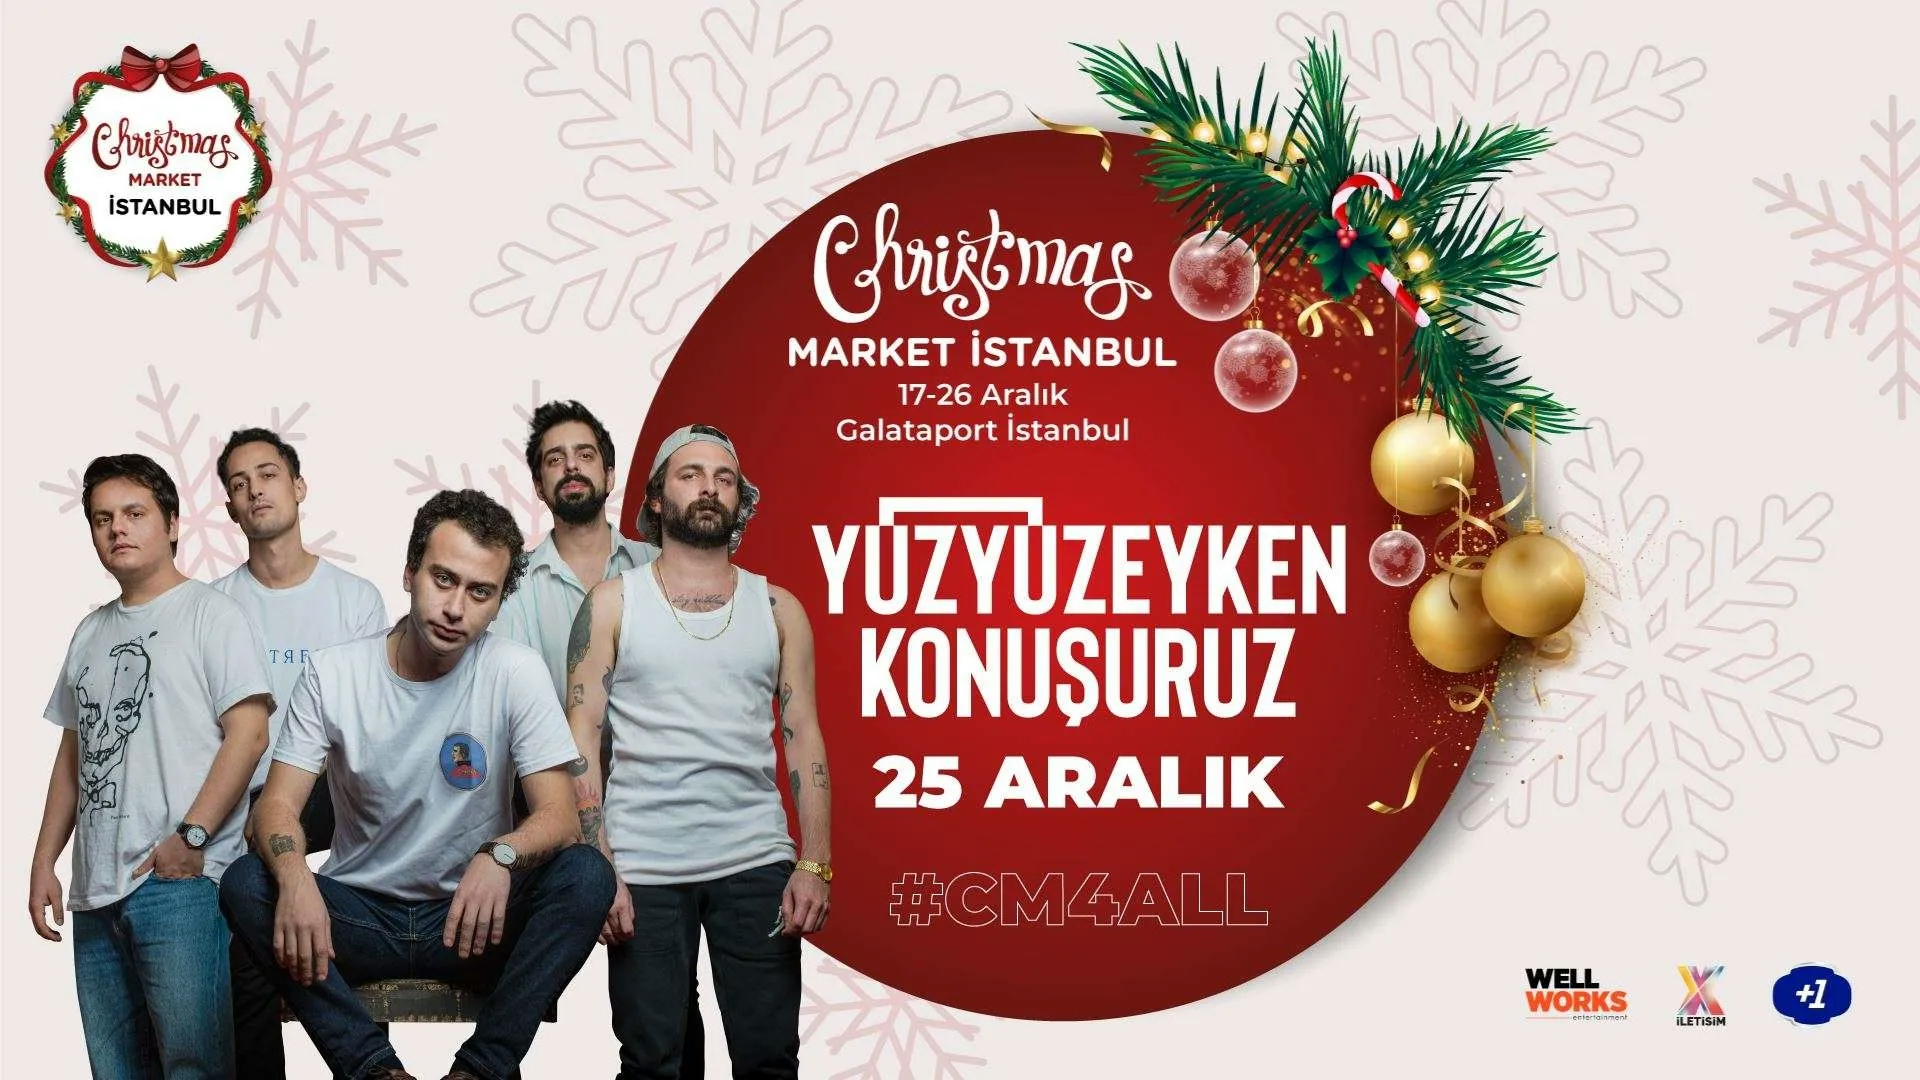 Yüzyüzeyken Konuşuruz - Christmas Market İstanbul